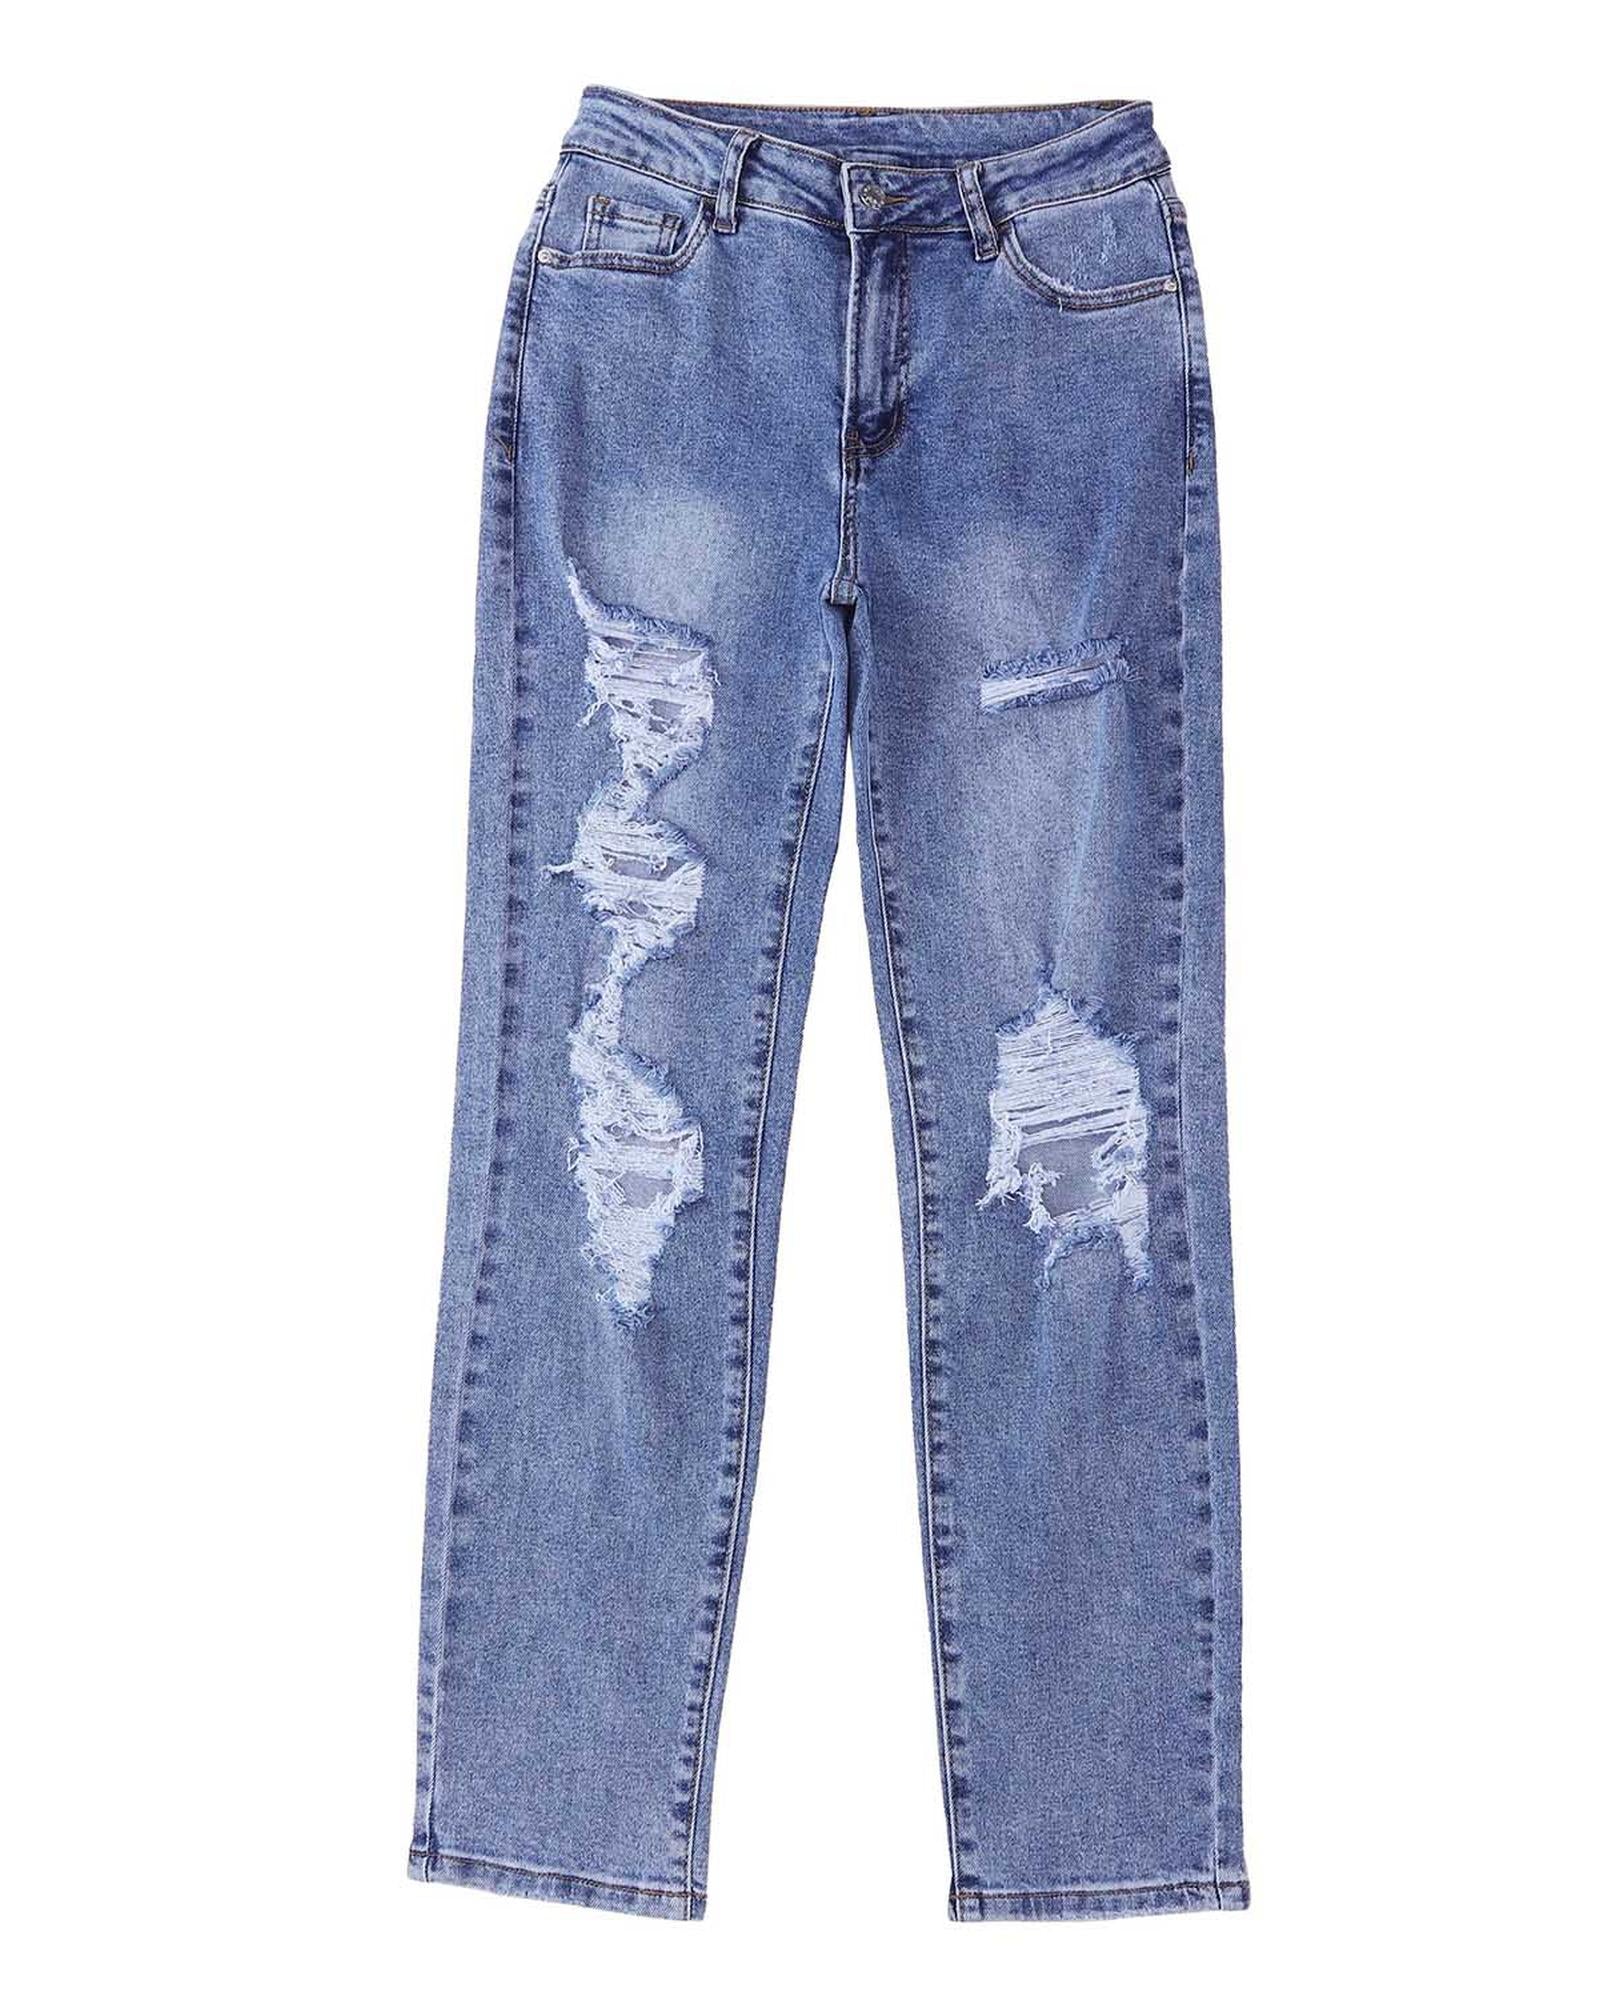 Destroyed Boyfriend Jeans - 10 US